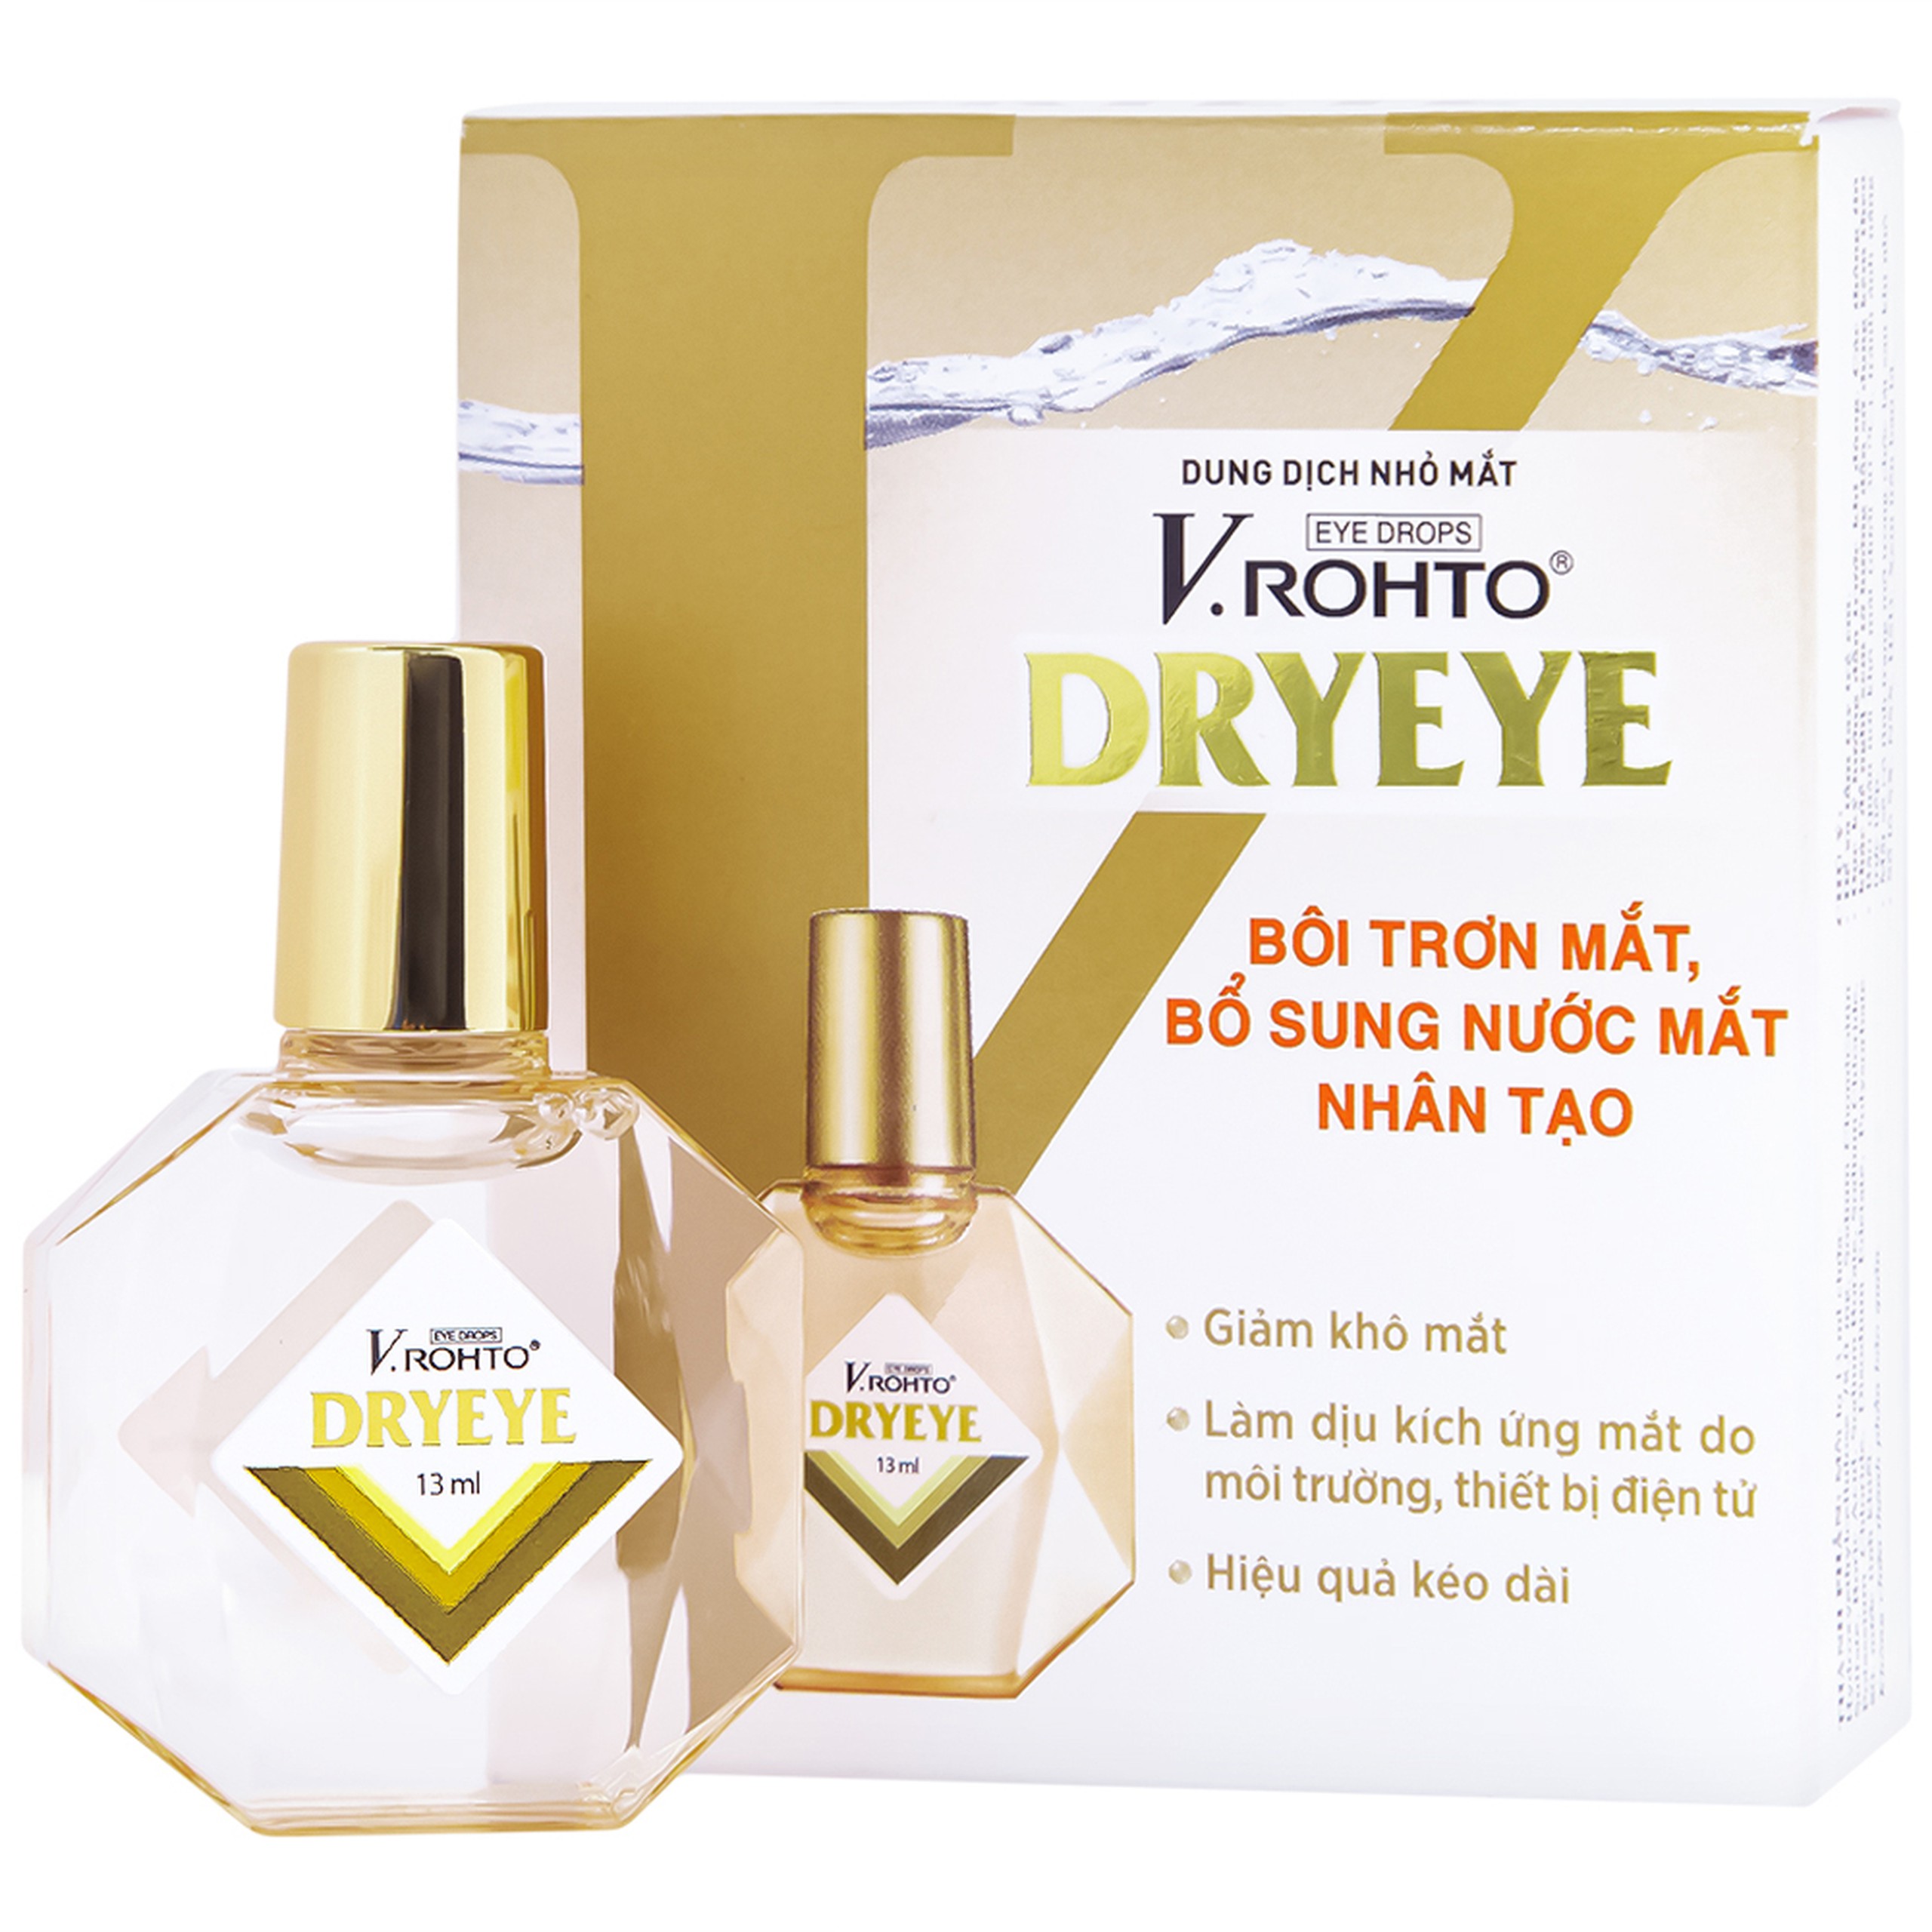 Dung dịch nhỏ mắt V.Rohto Dryeye bôi trơn mắt, bổ sung nước mắt nhân tạo (13ml)